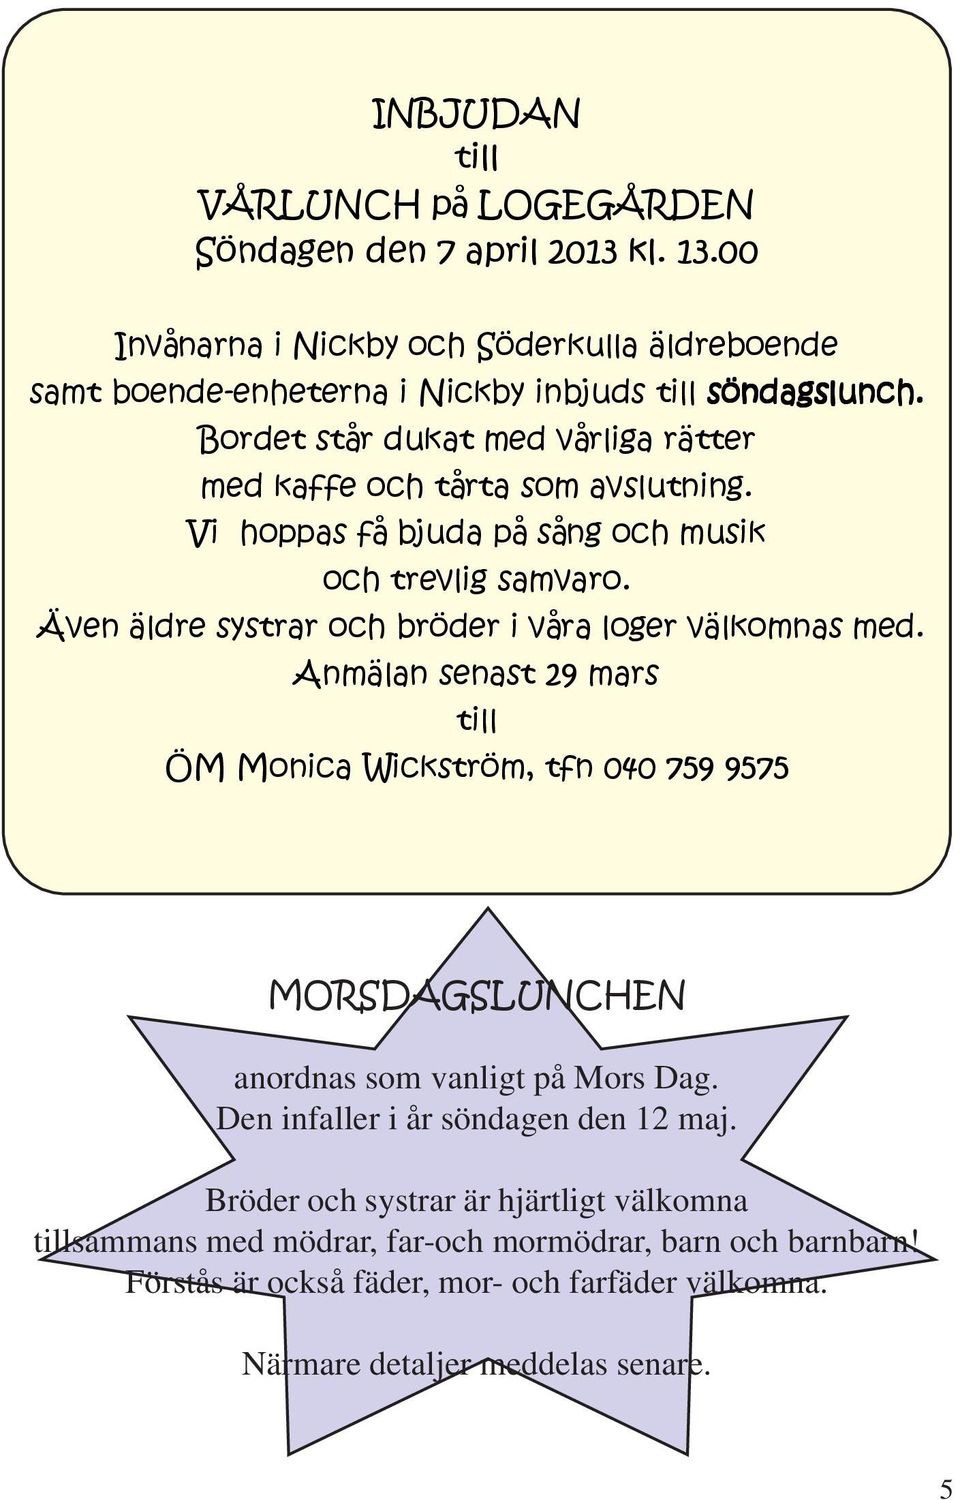 Även äldre systrar och bröder i våra loger välkomnas med. Anmälan senast 29 mars till ÖM Monica Wickström, tfn 040 759 9575 MORSDAGSLUNCHEN anordnas som vanligt på Mors Dag.